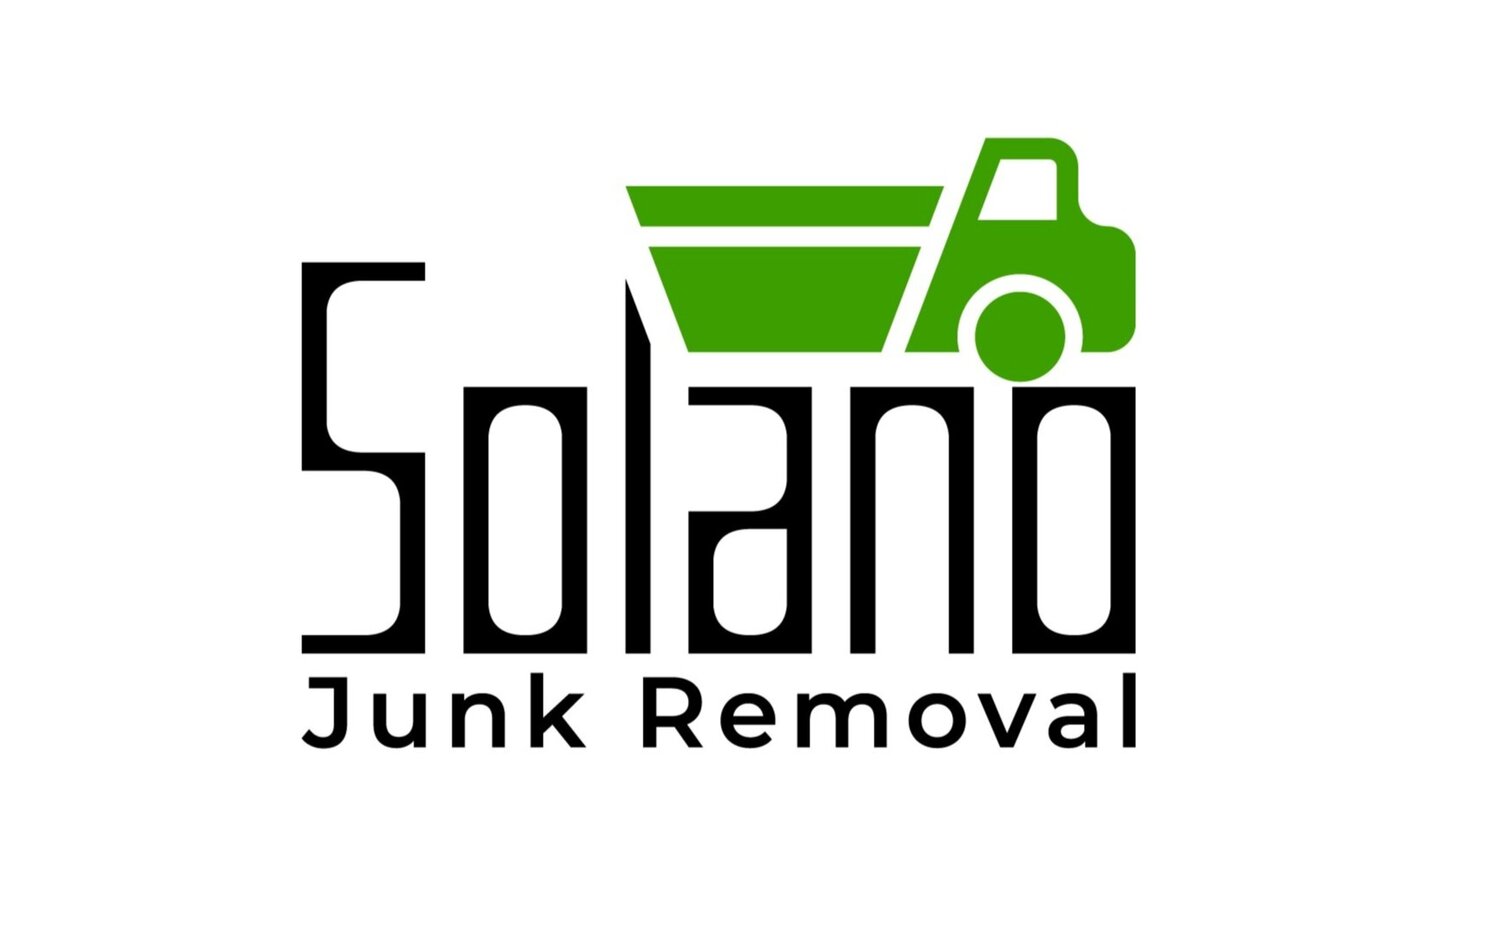 Solano Junk Removal